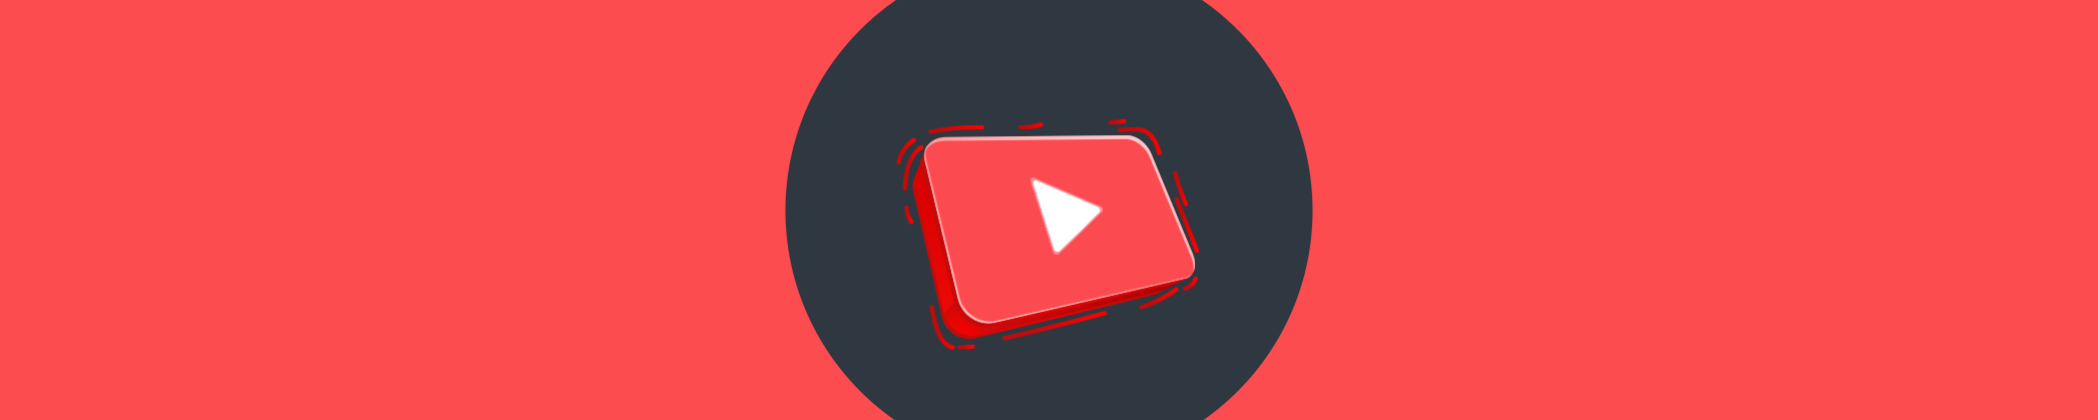 Първи стъпки в YouTube маркетинга - типове видеа